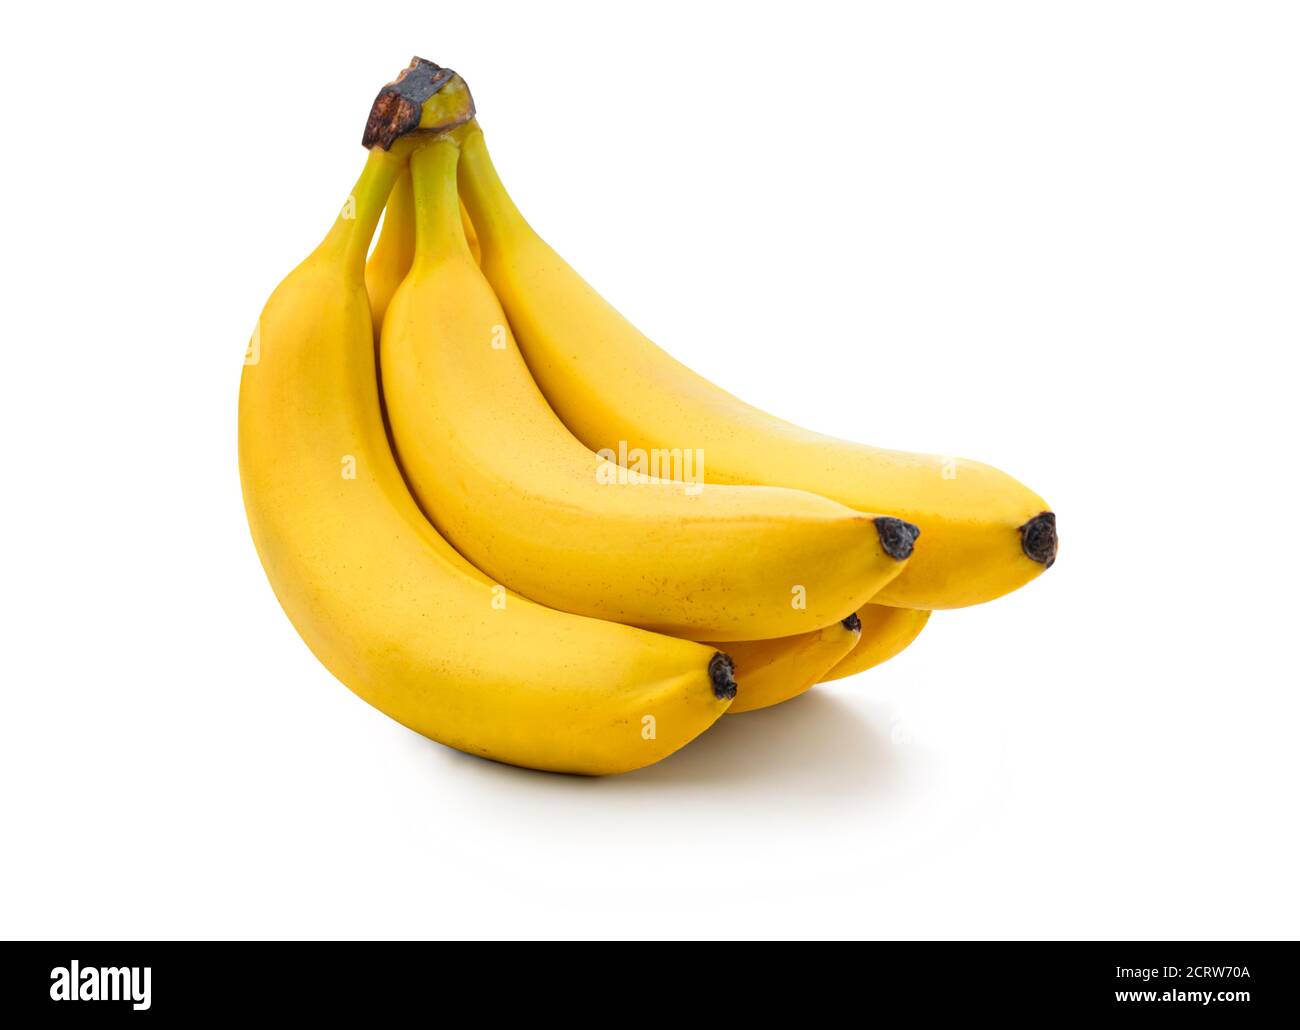 Fresh banana isolated on white Stock Photo